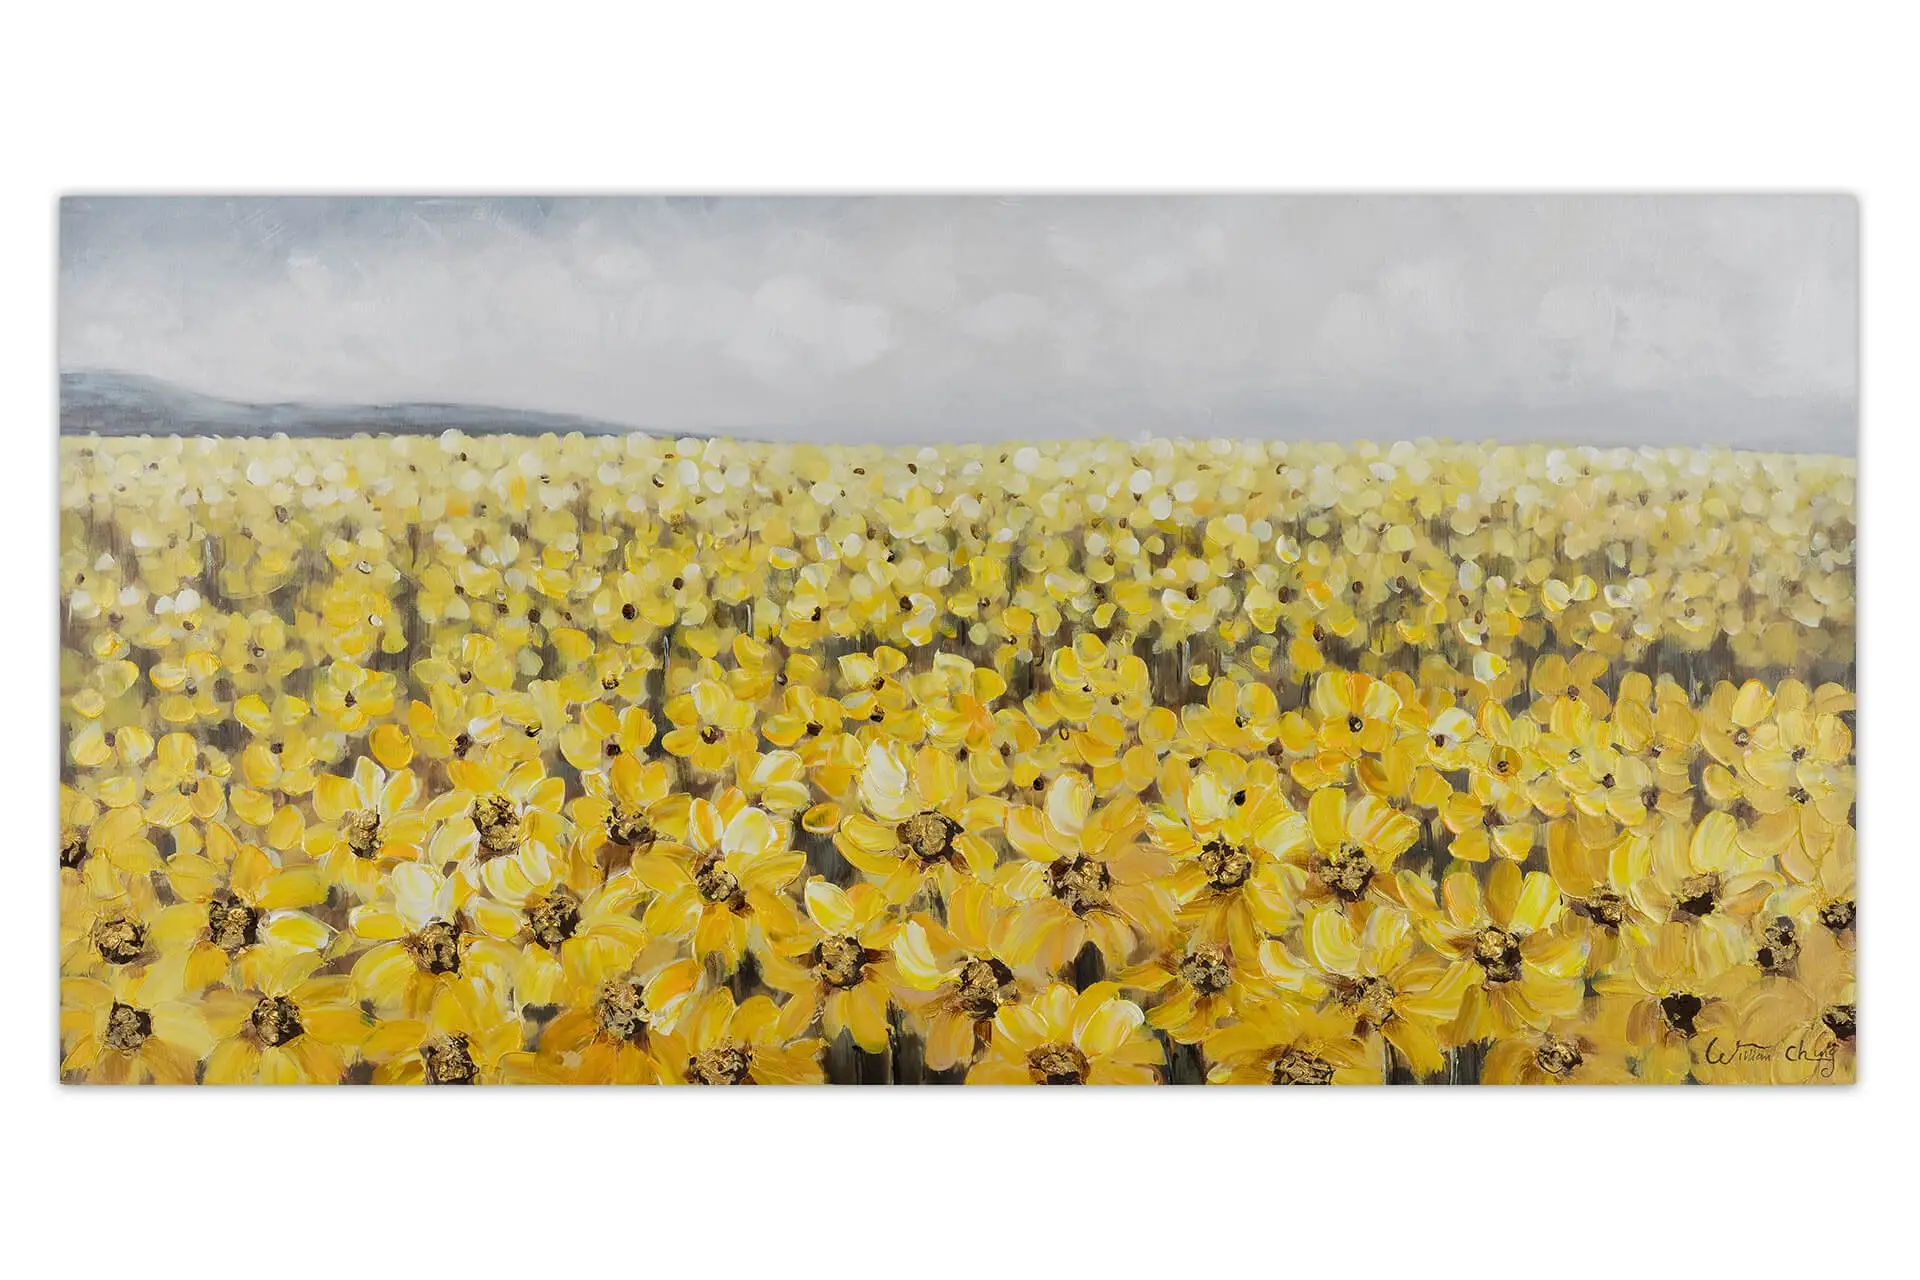 Acrylbild handgemalt in Gelb Blumenmeer